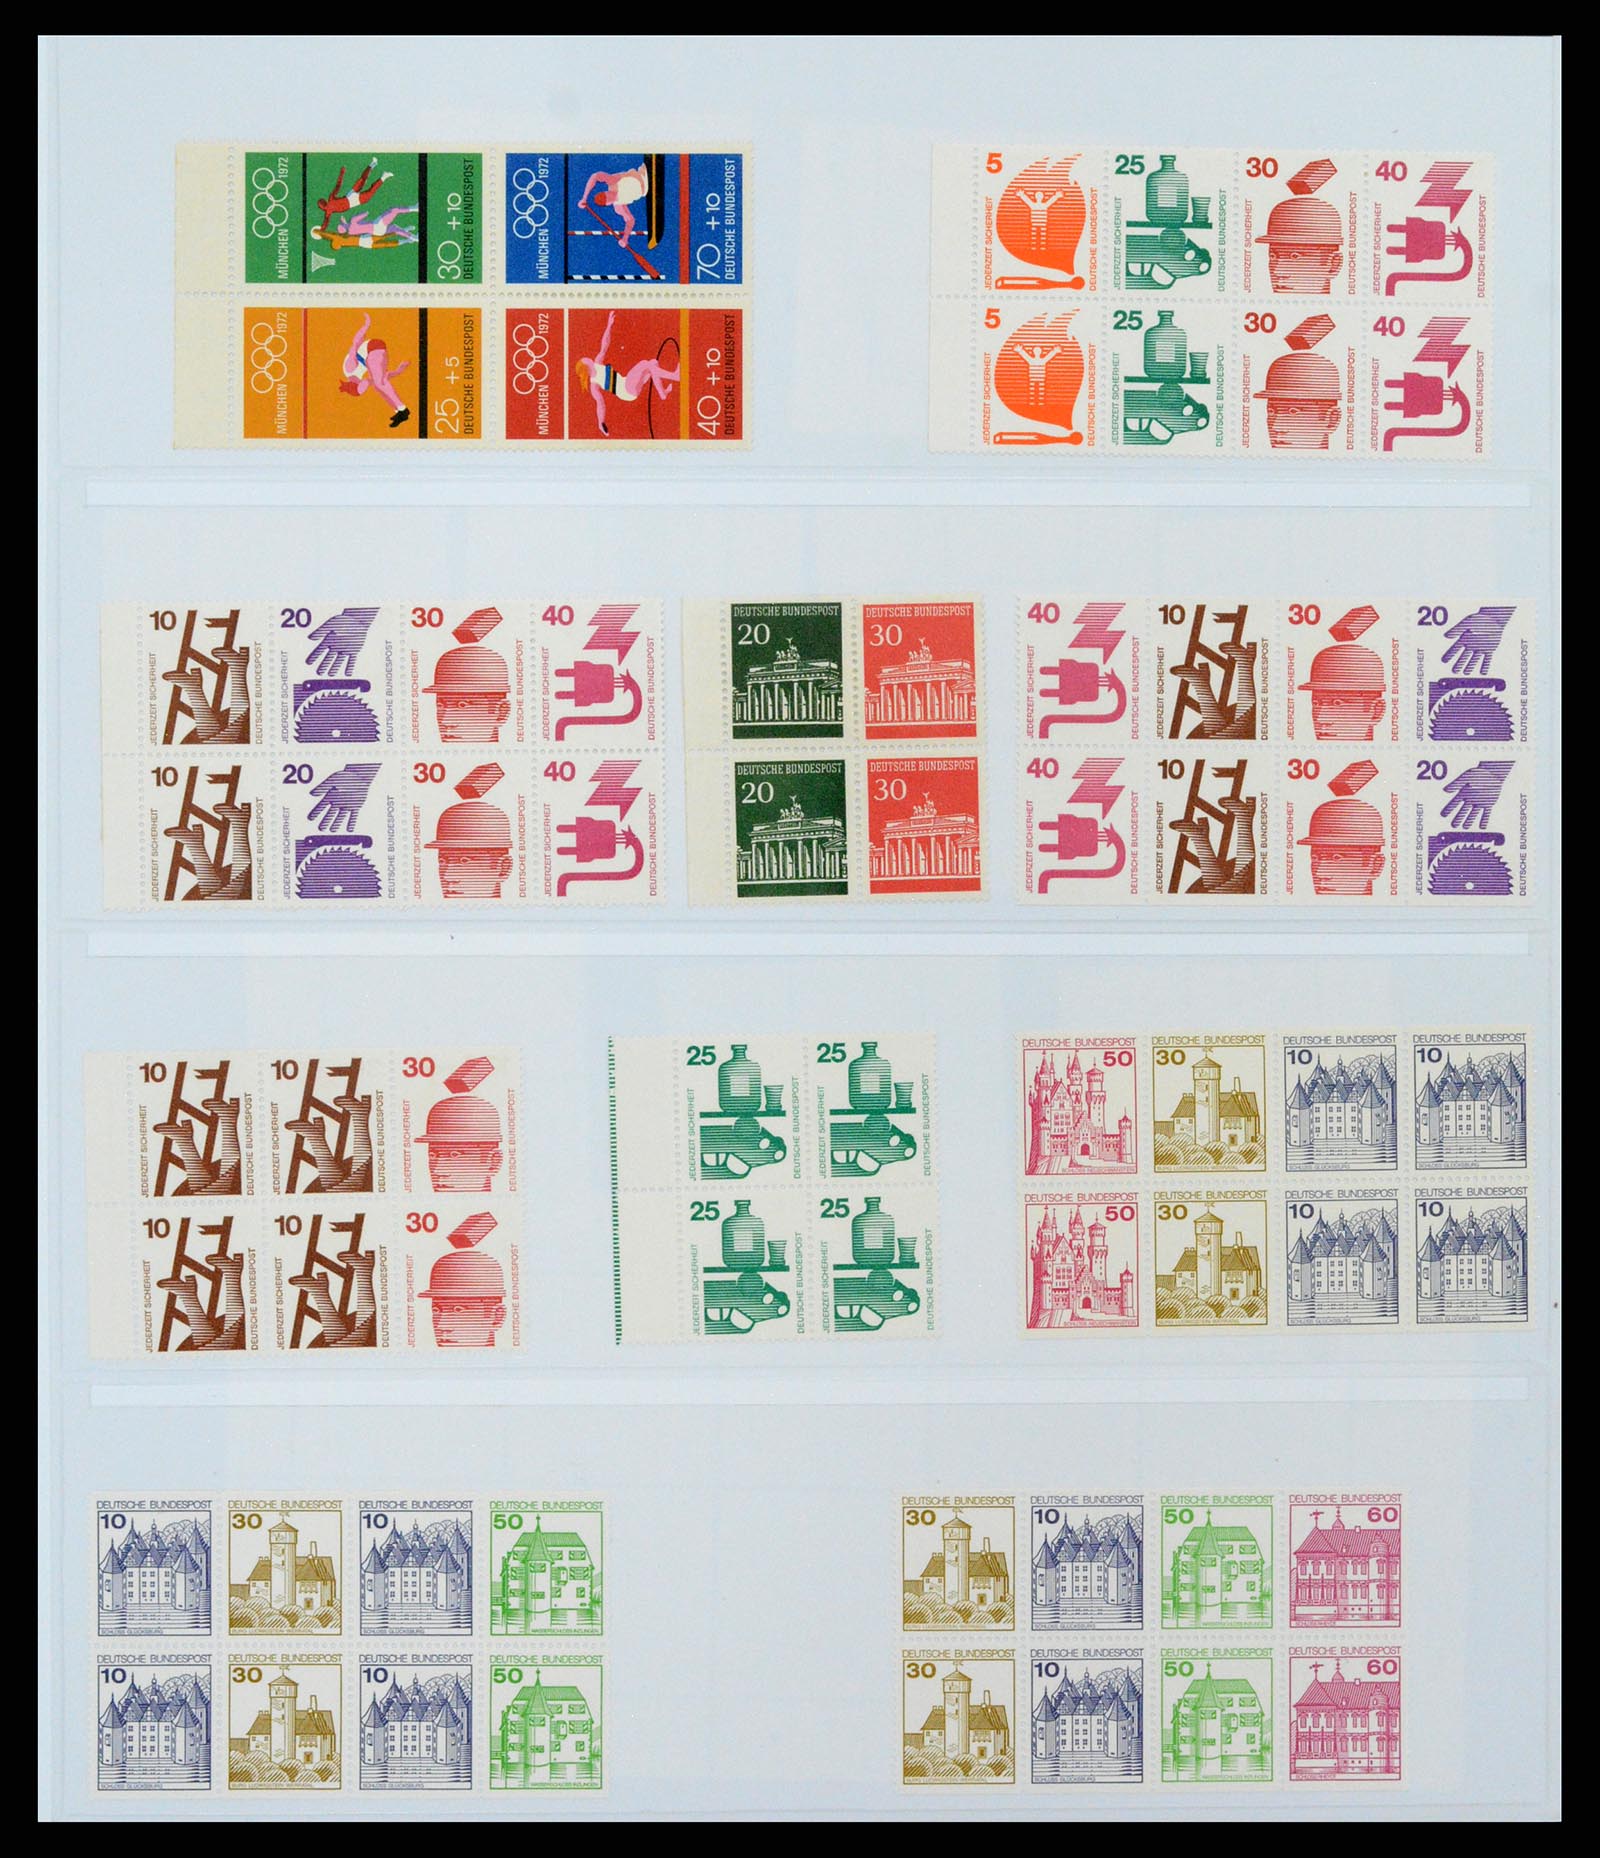 37336 019 - Postzegelverzameling 37336 Bundespost combinaties 1955-1980.